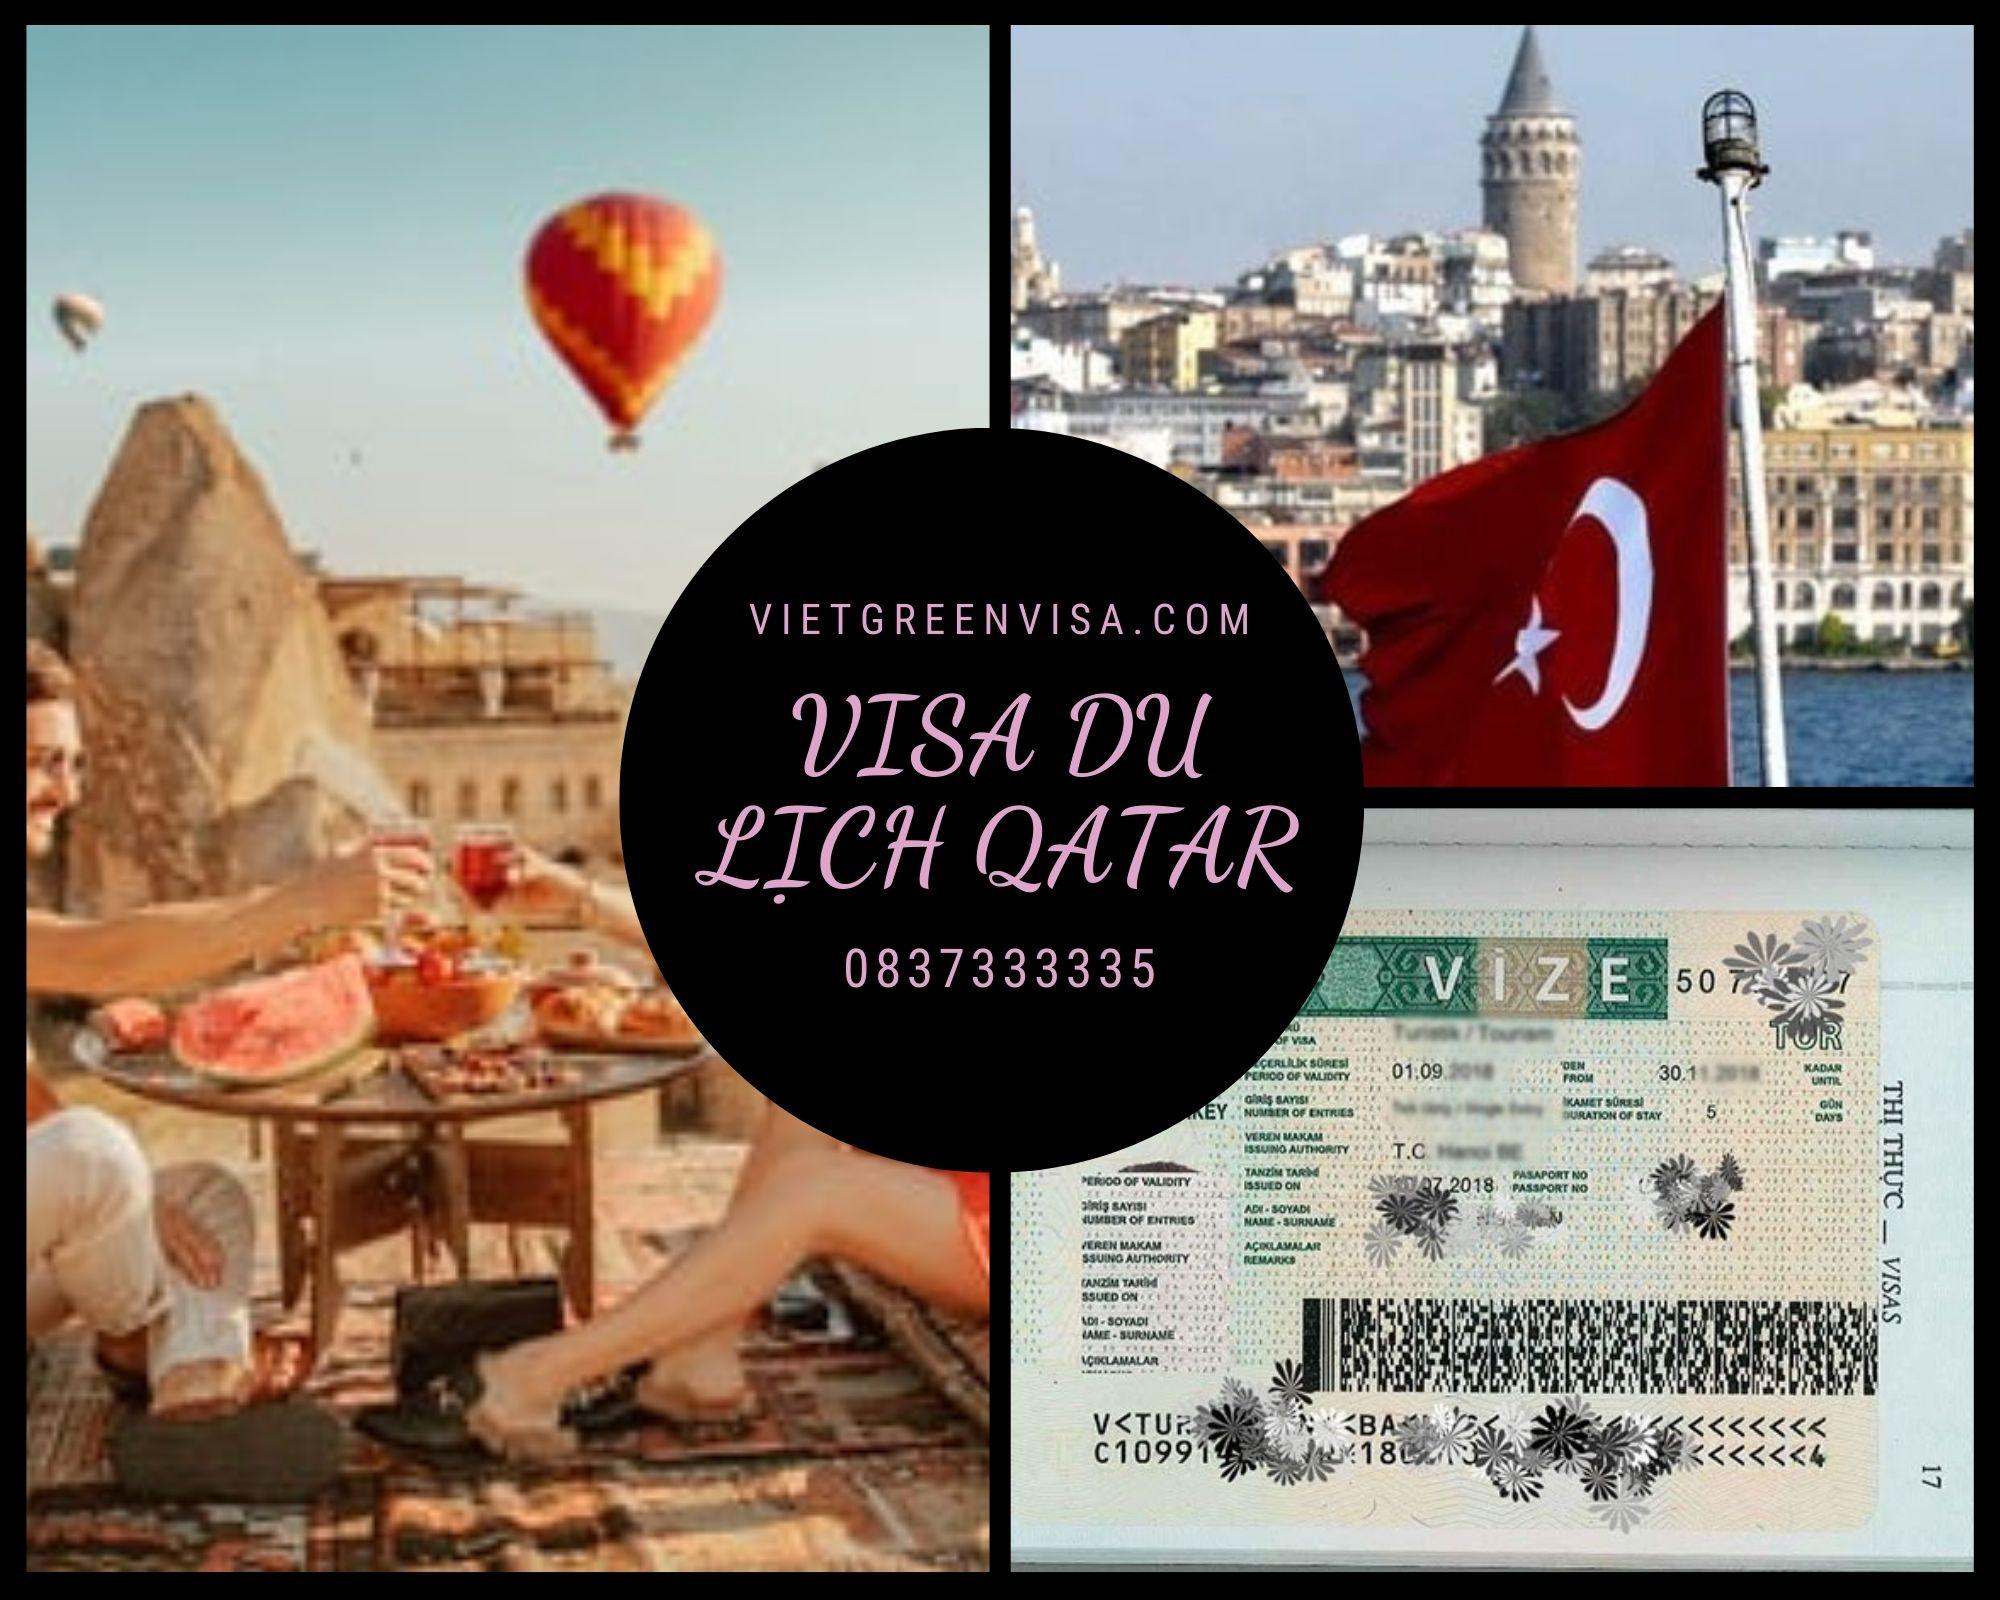 Dịch vụ làm visa Qatar du lịch 14 ngày - Bao đậu